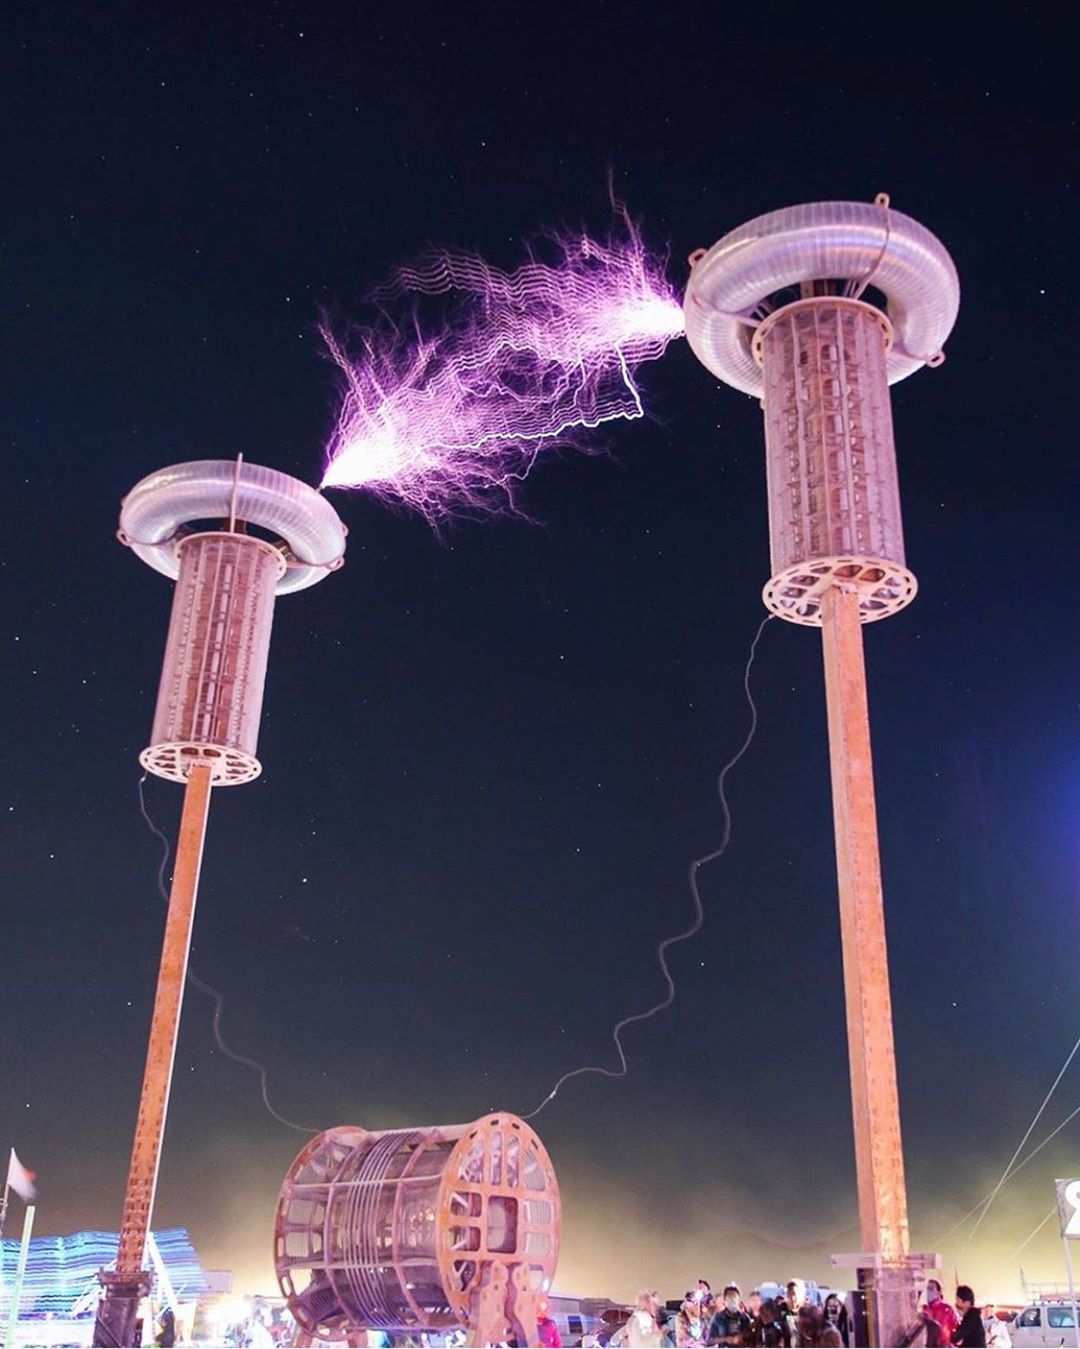 Burning Man 2019 13 festival ocio musica futurismo estilo de vida viajar veano